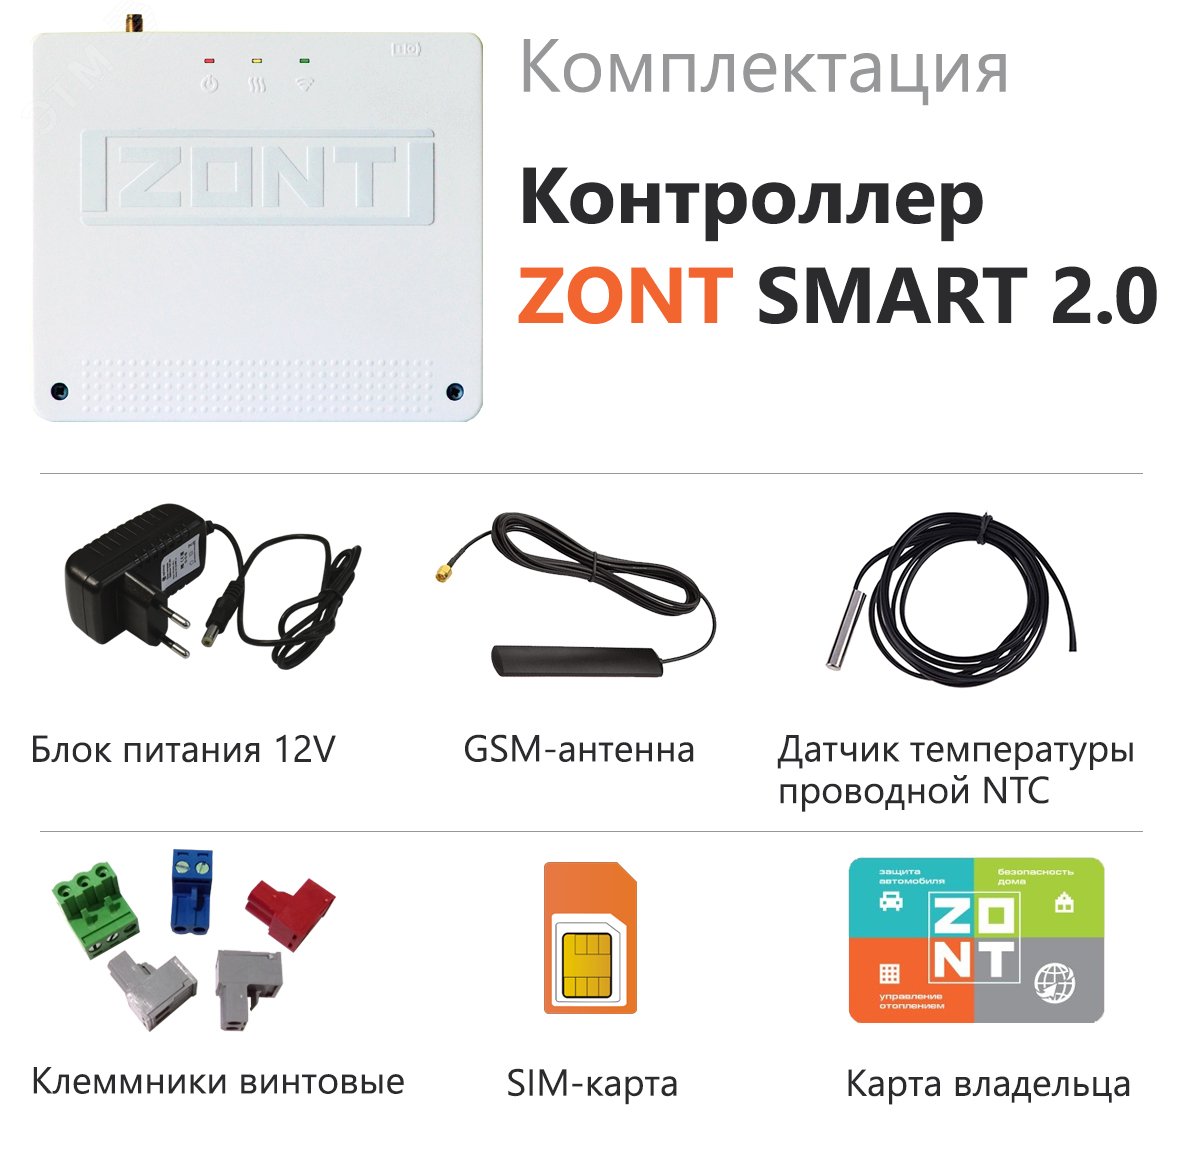 Контроллер ZONT SMART 2.0 отопительный GSM / Wi-Fi на стену и DIN-рейку ML00004479 Zont - превью 4